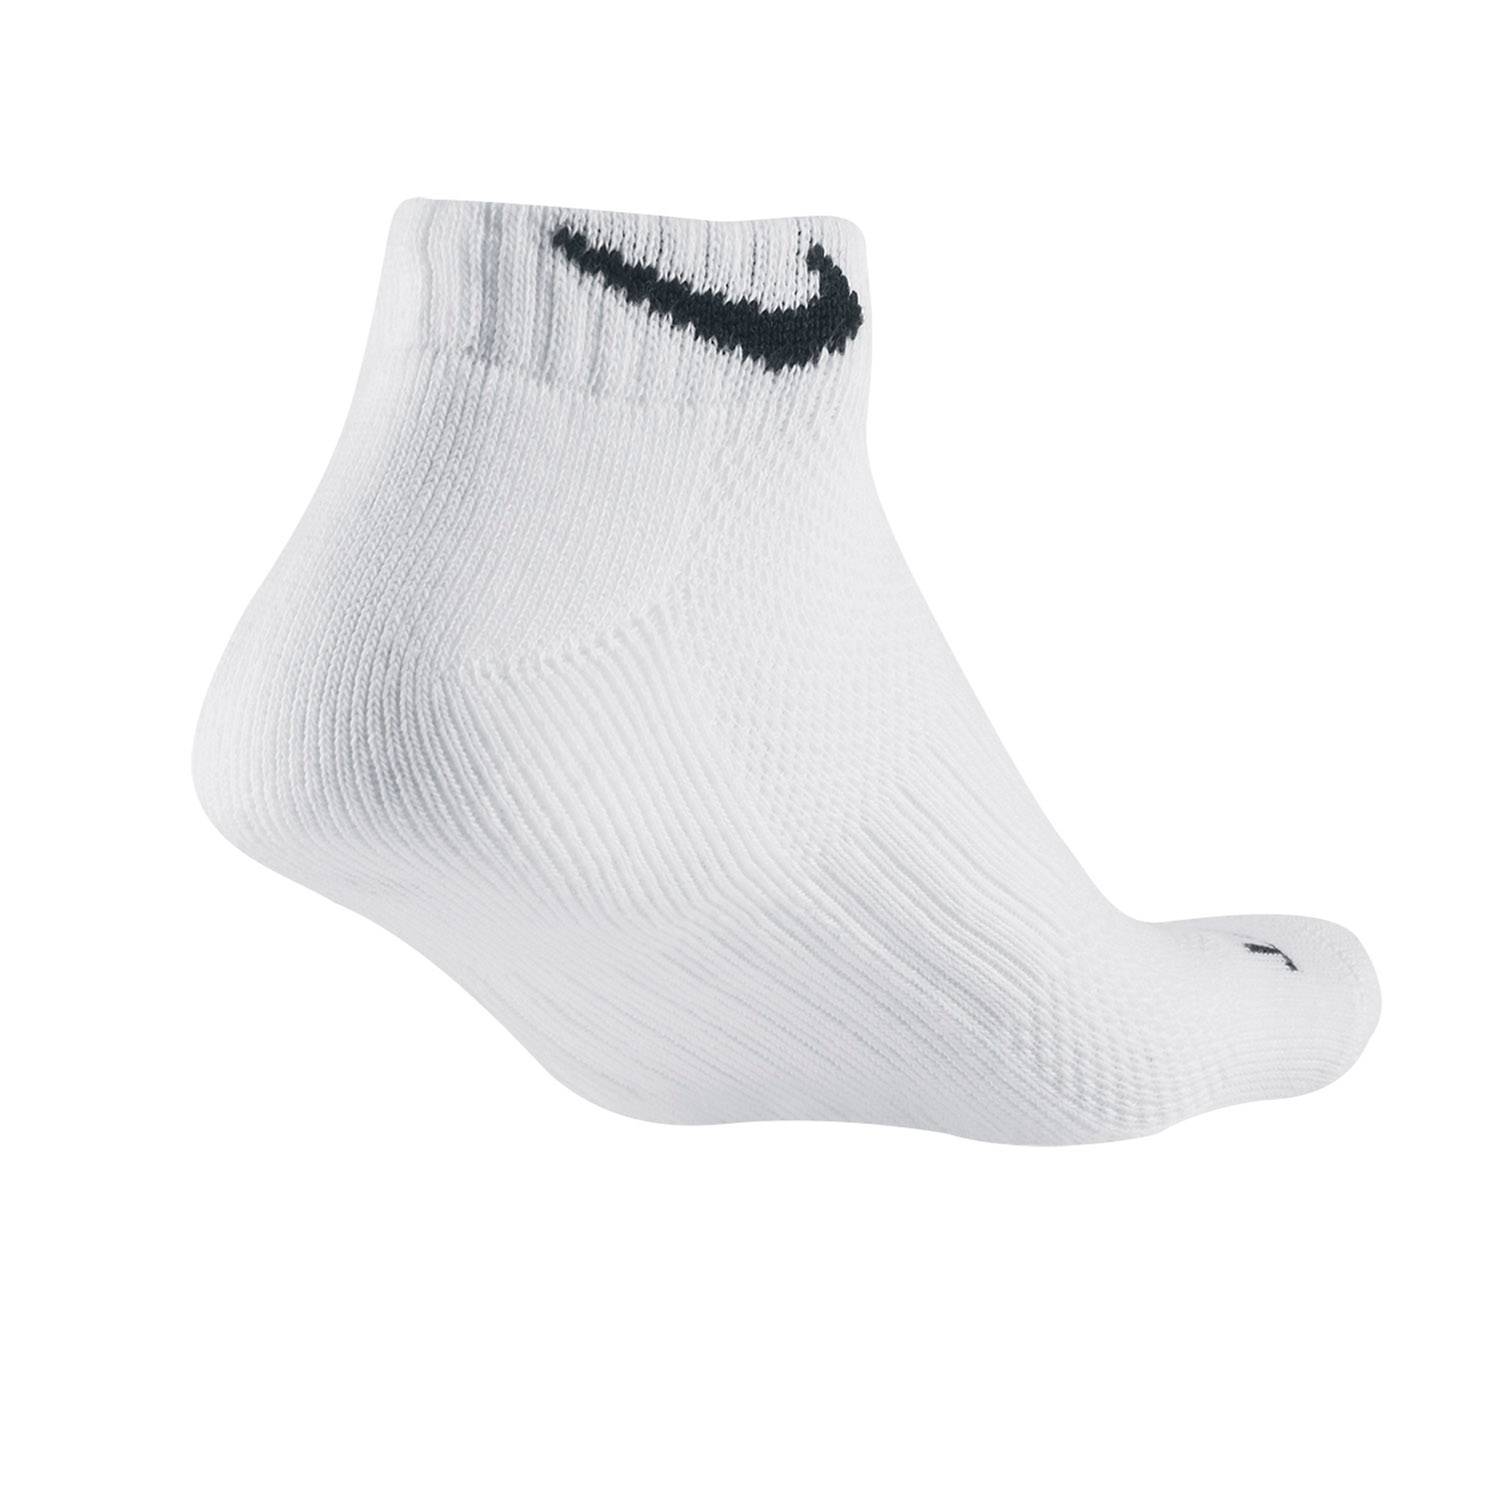 Nike Dri-FIT Low Cut Socks (6 Pack)